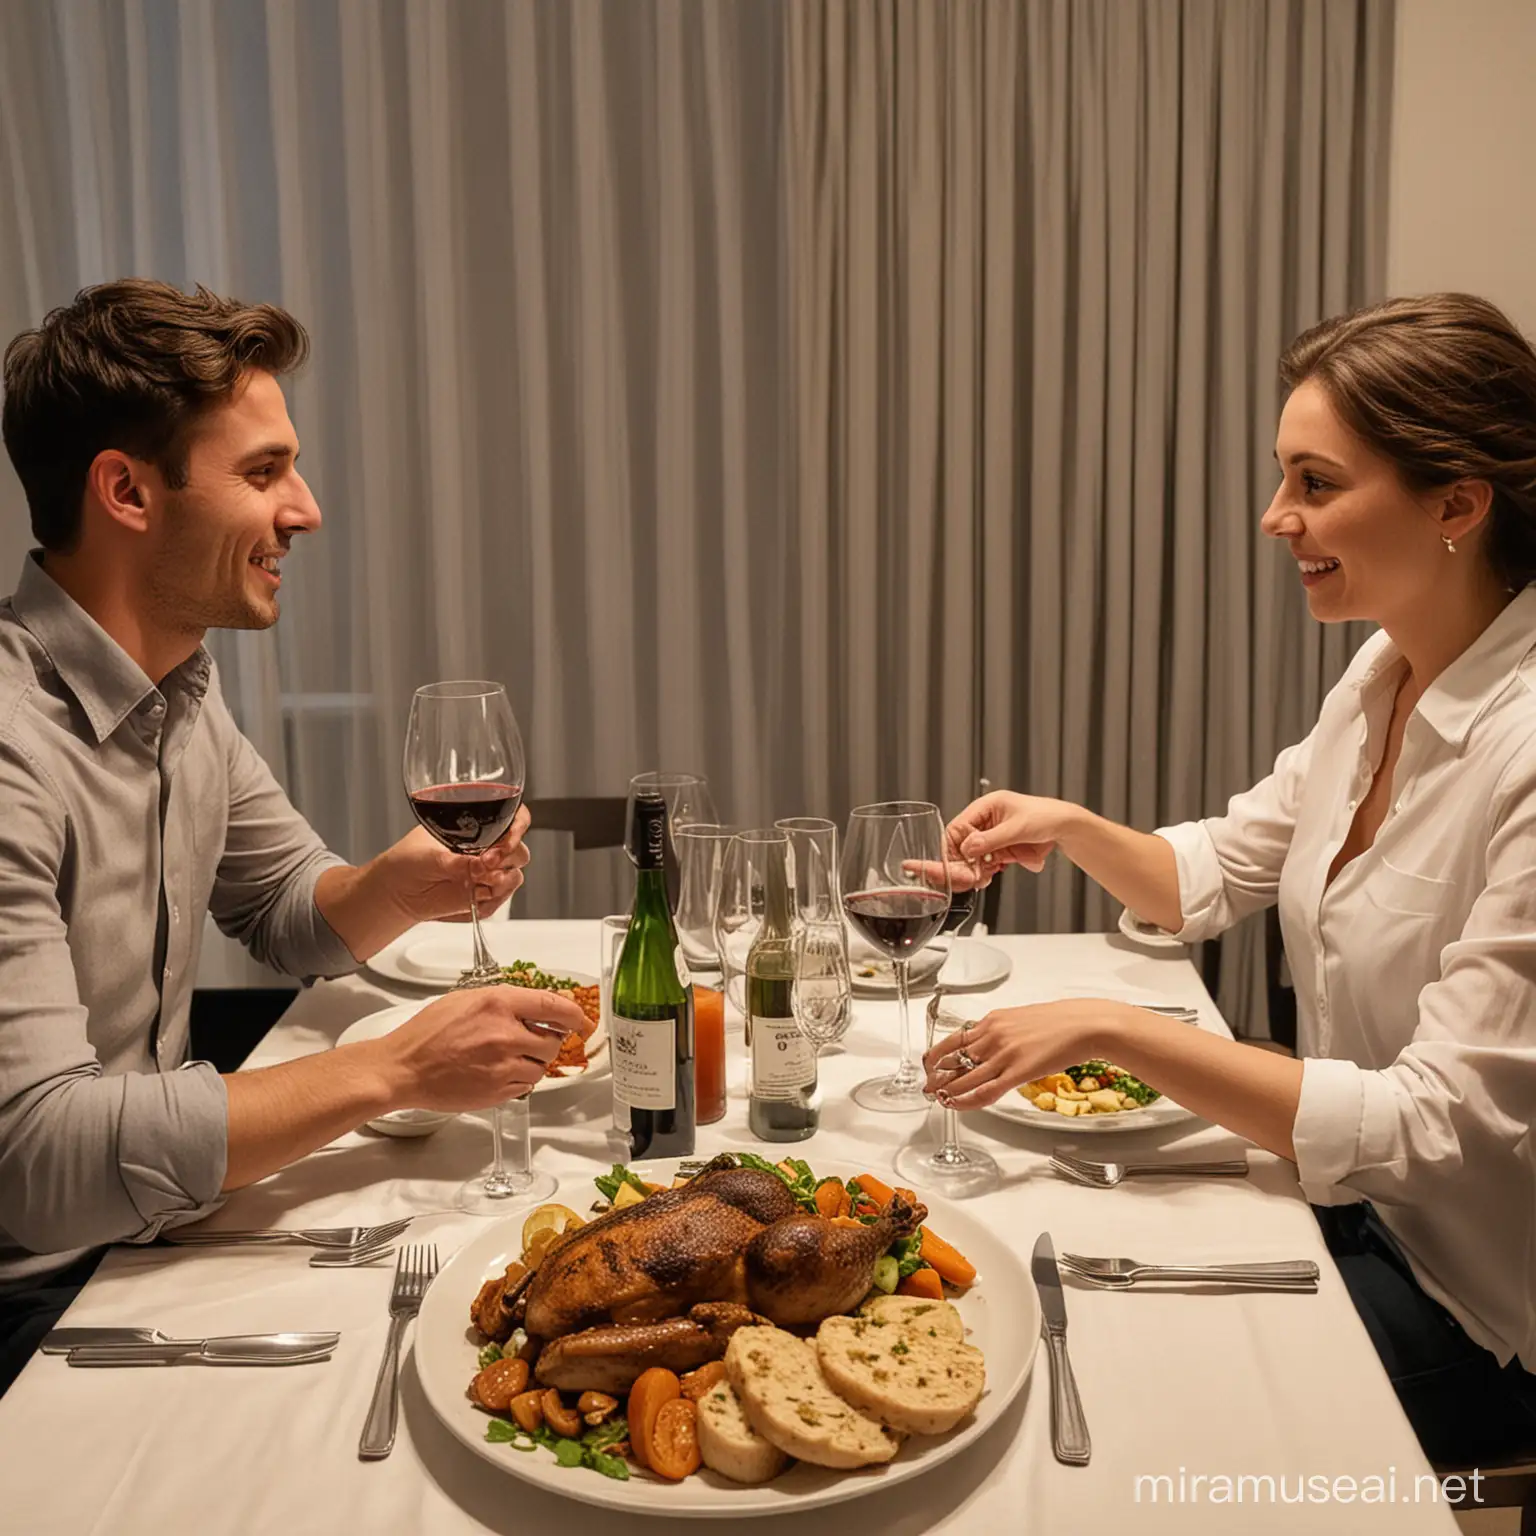 cena para dos personas, un hombre y una mujer